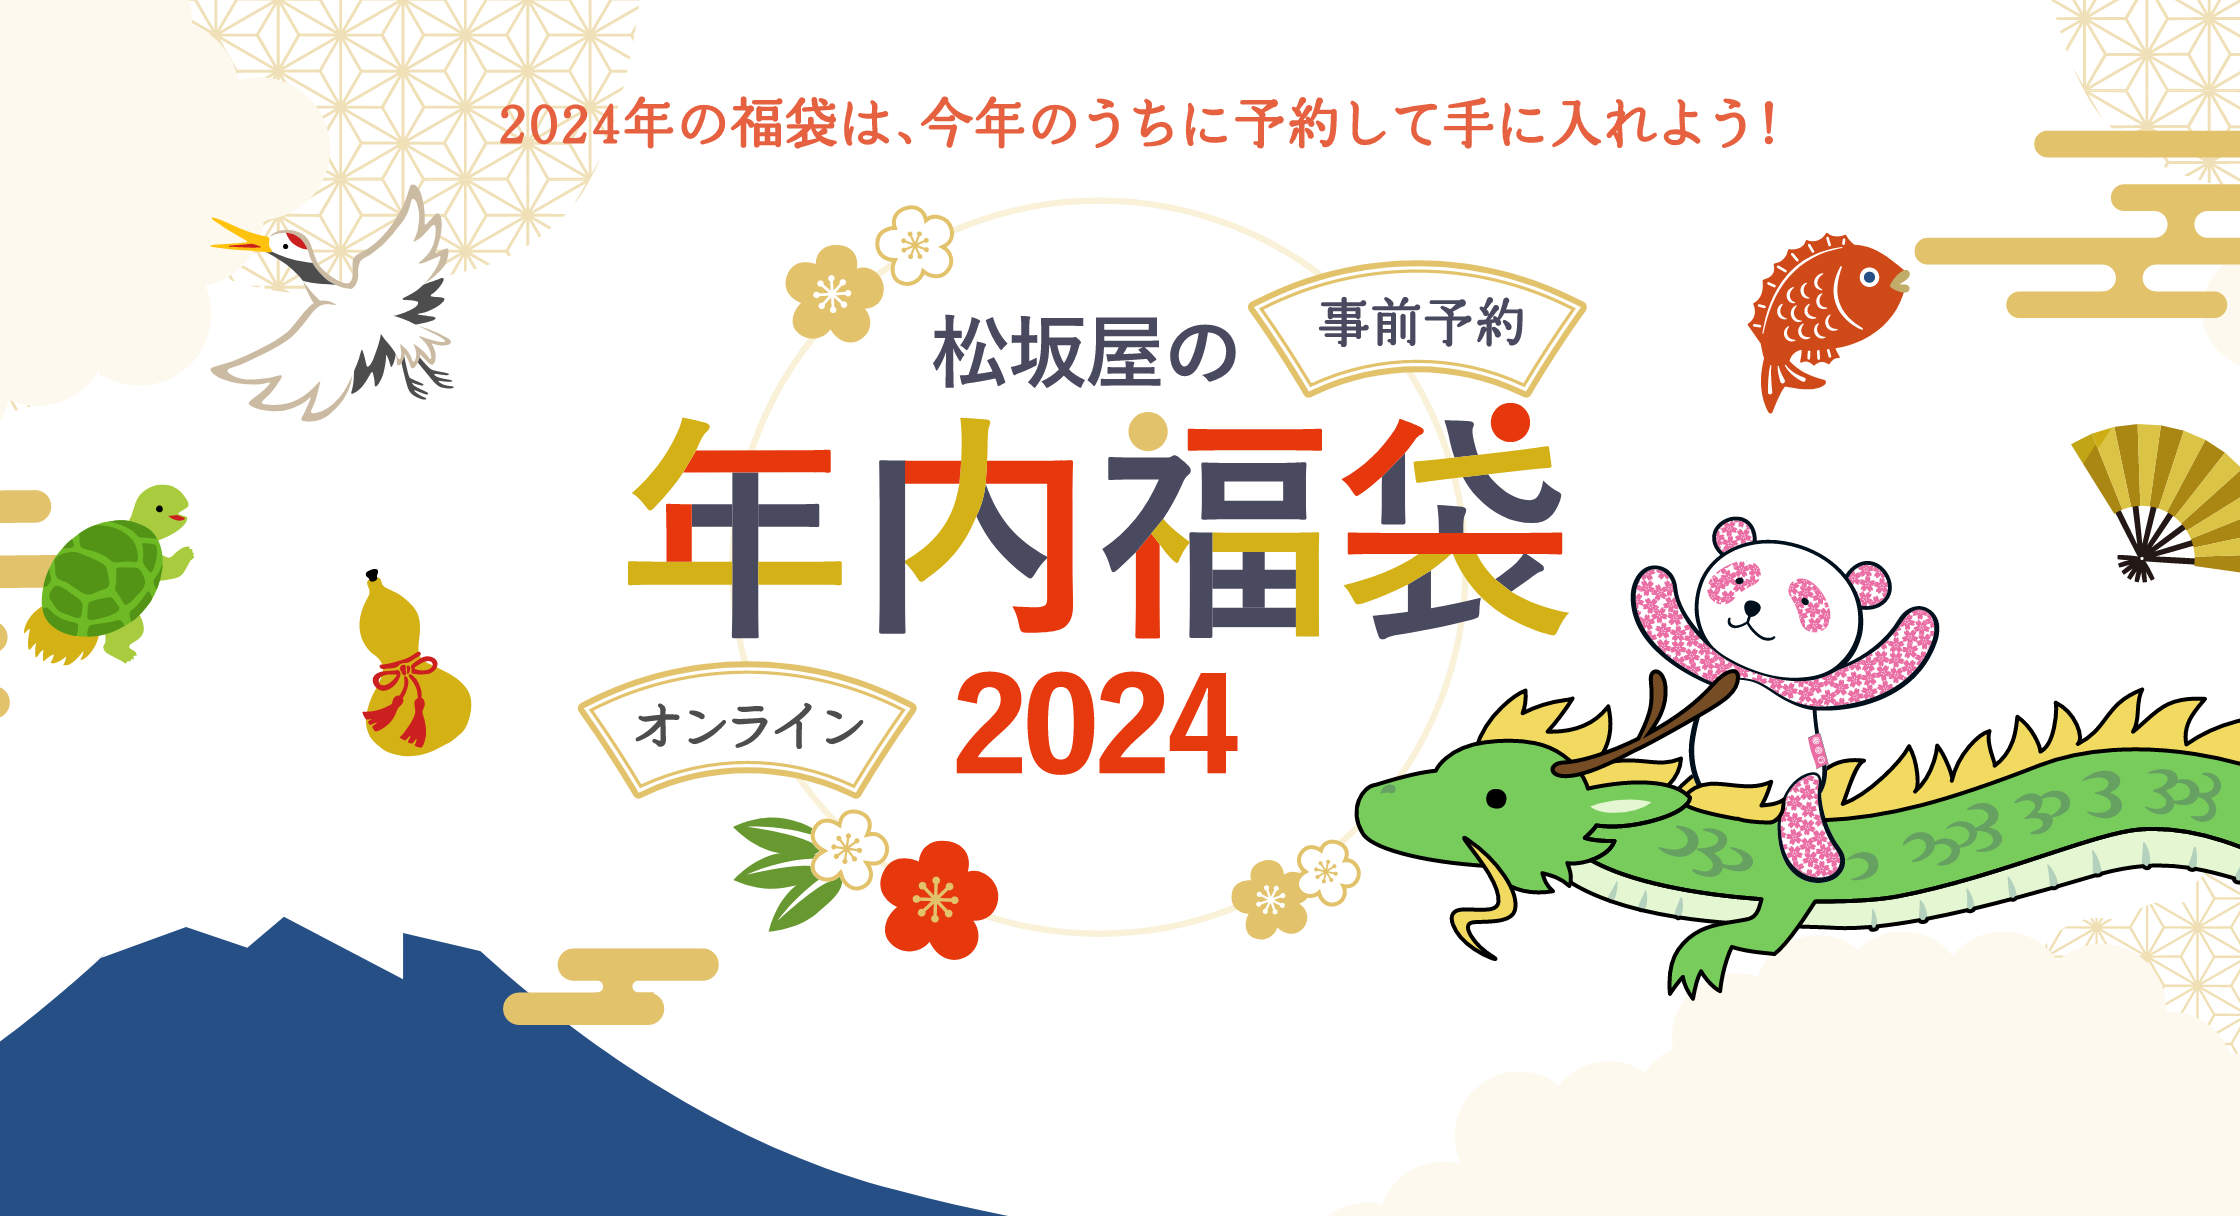 2024年の福袋は、今年のうちに予約して手に入れよう！｜松坂屋の事前福袋&オンライン福袋 2024年